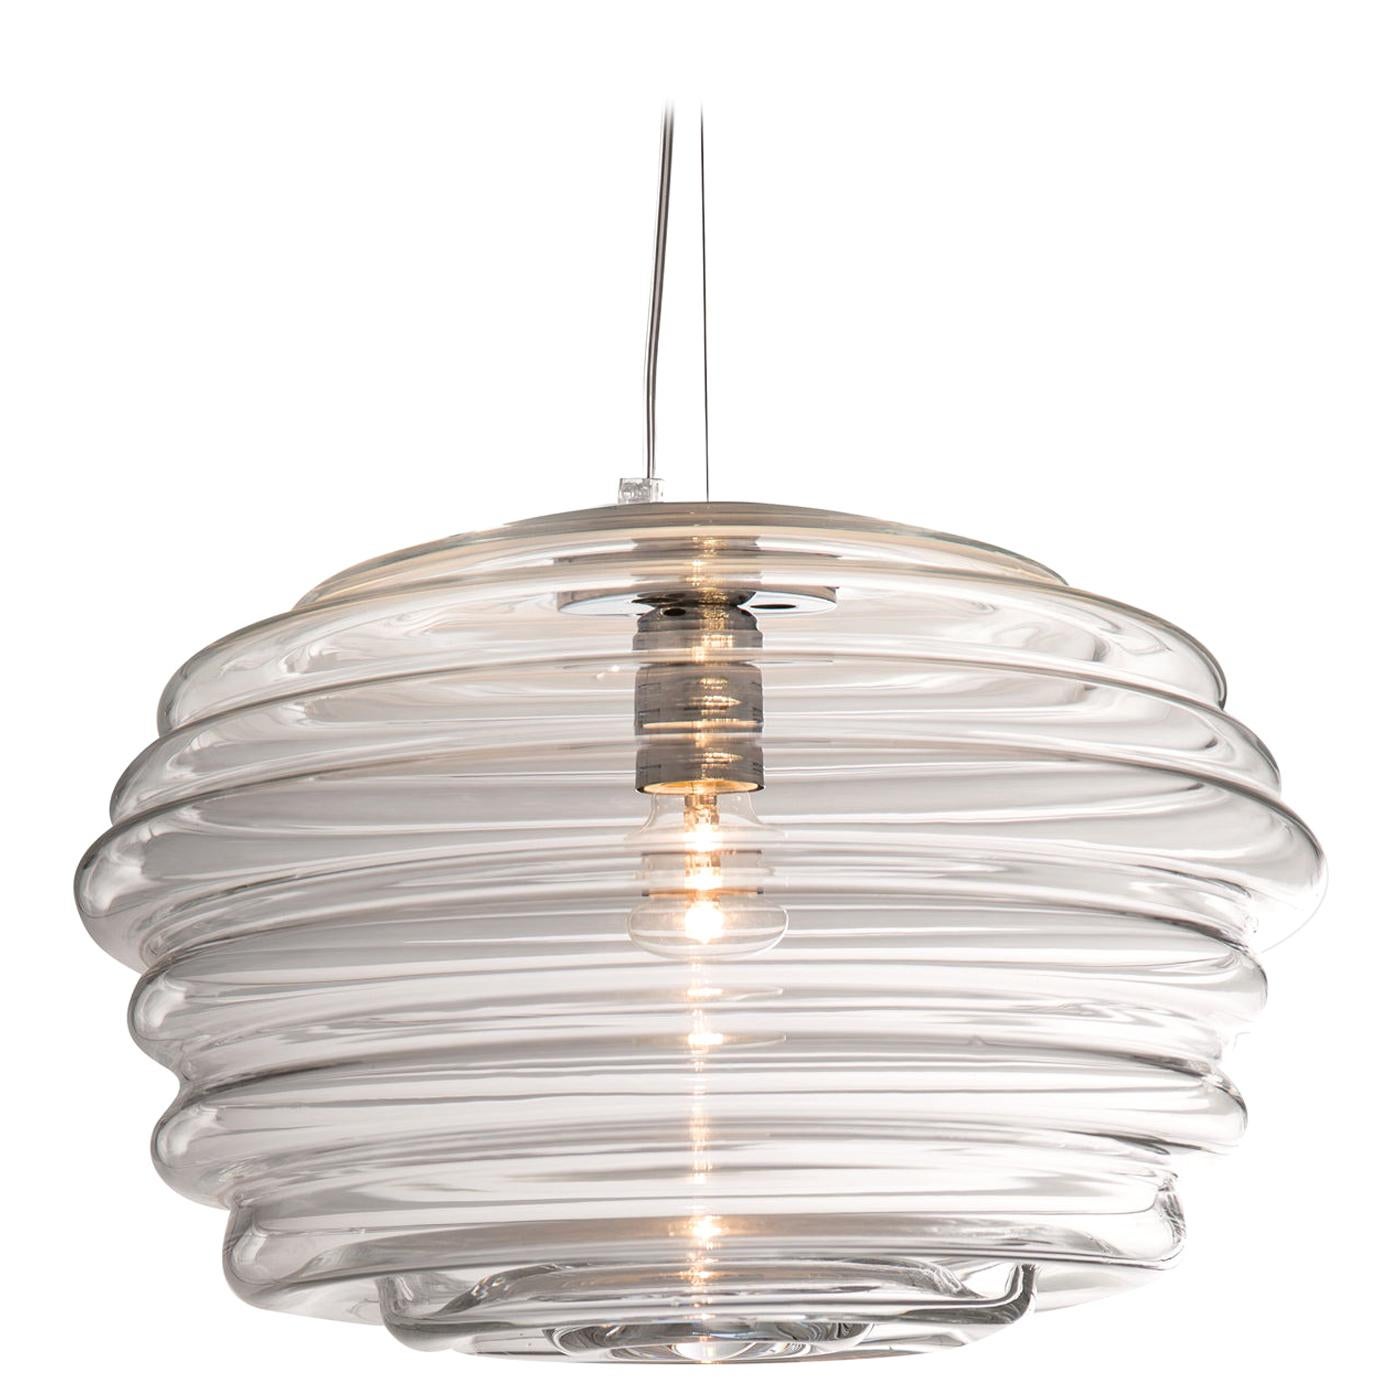 Onda Large Pendant Lamp by Giovanni Barbato